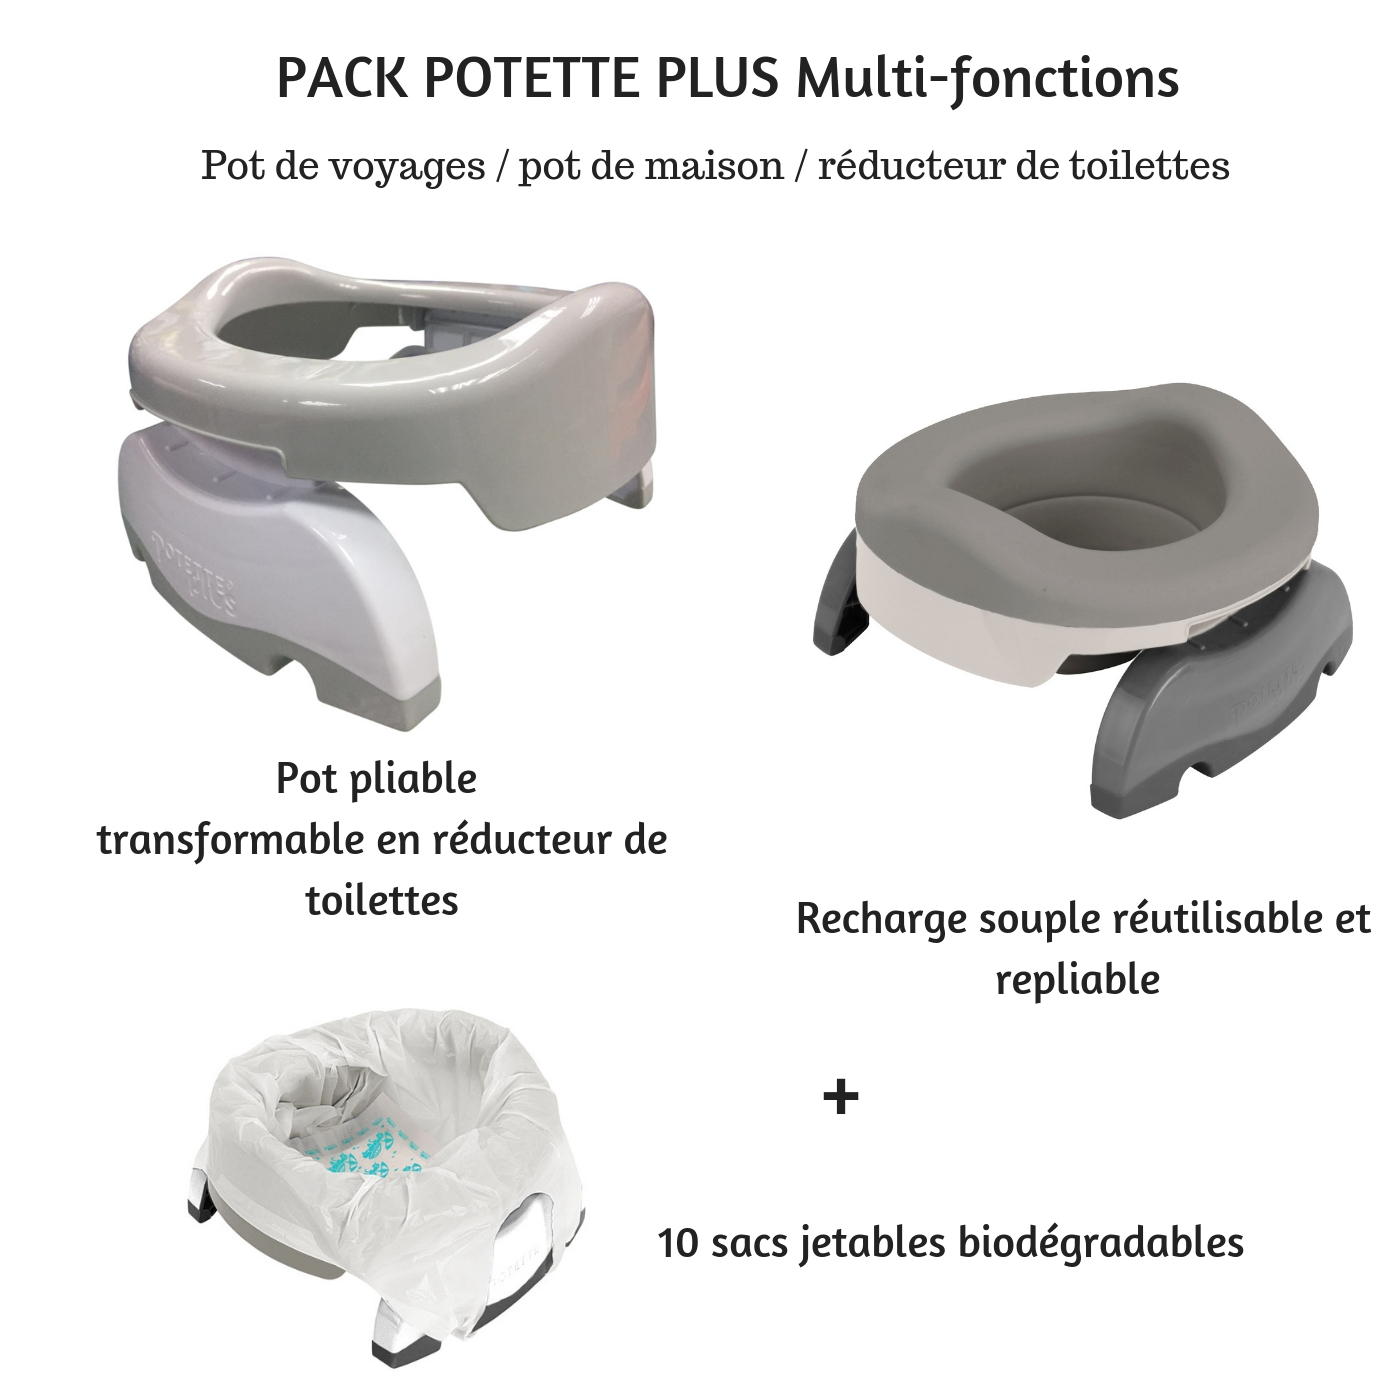 Pot multi-fonctions pot de voyages + réducteur de toilettes + pot